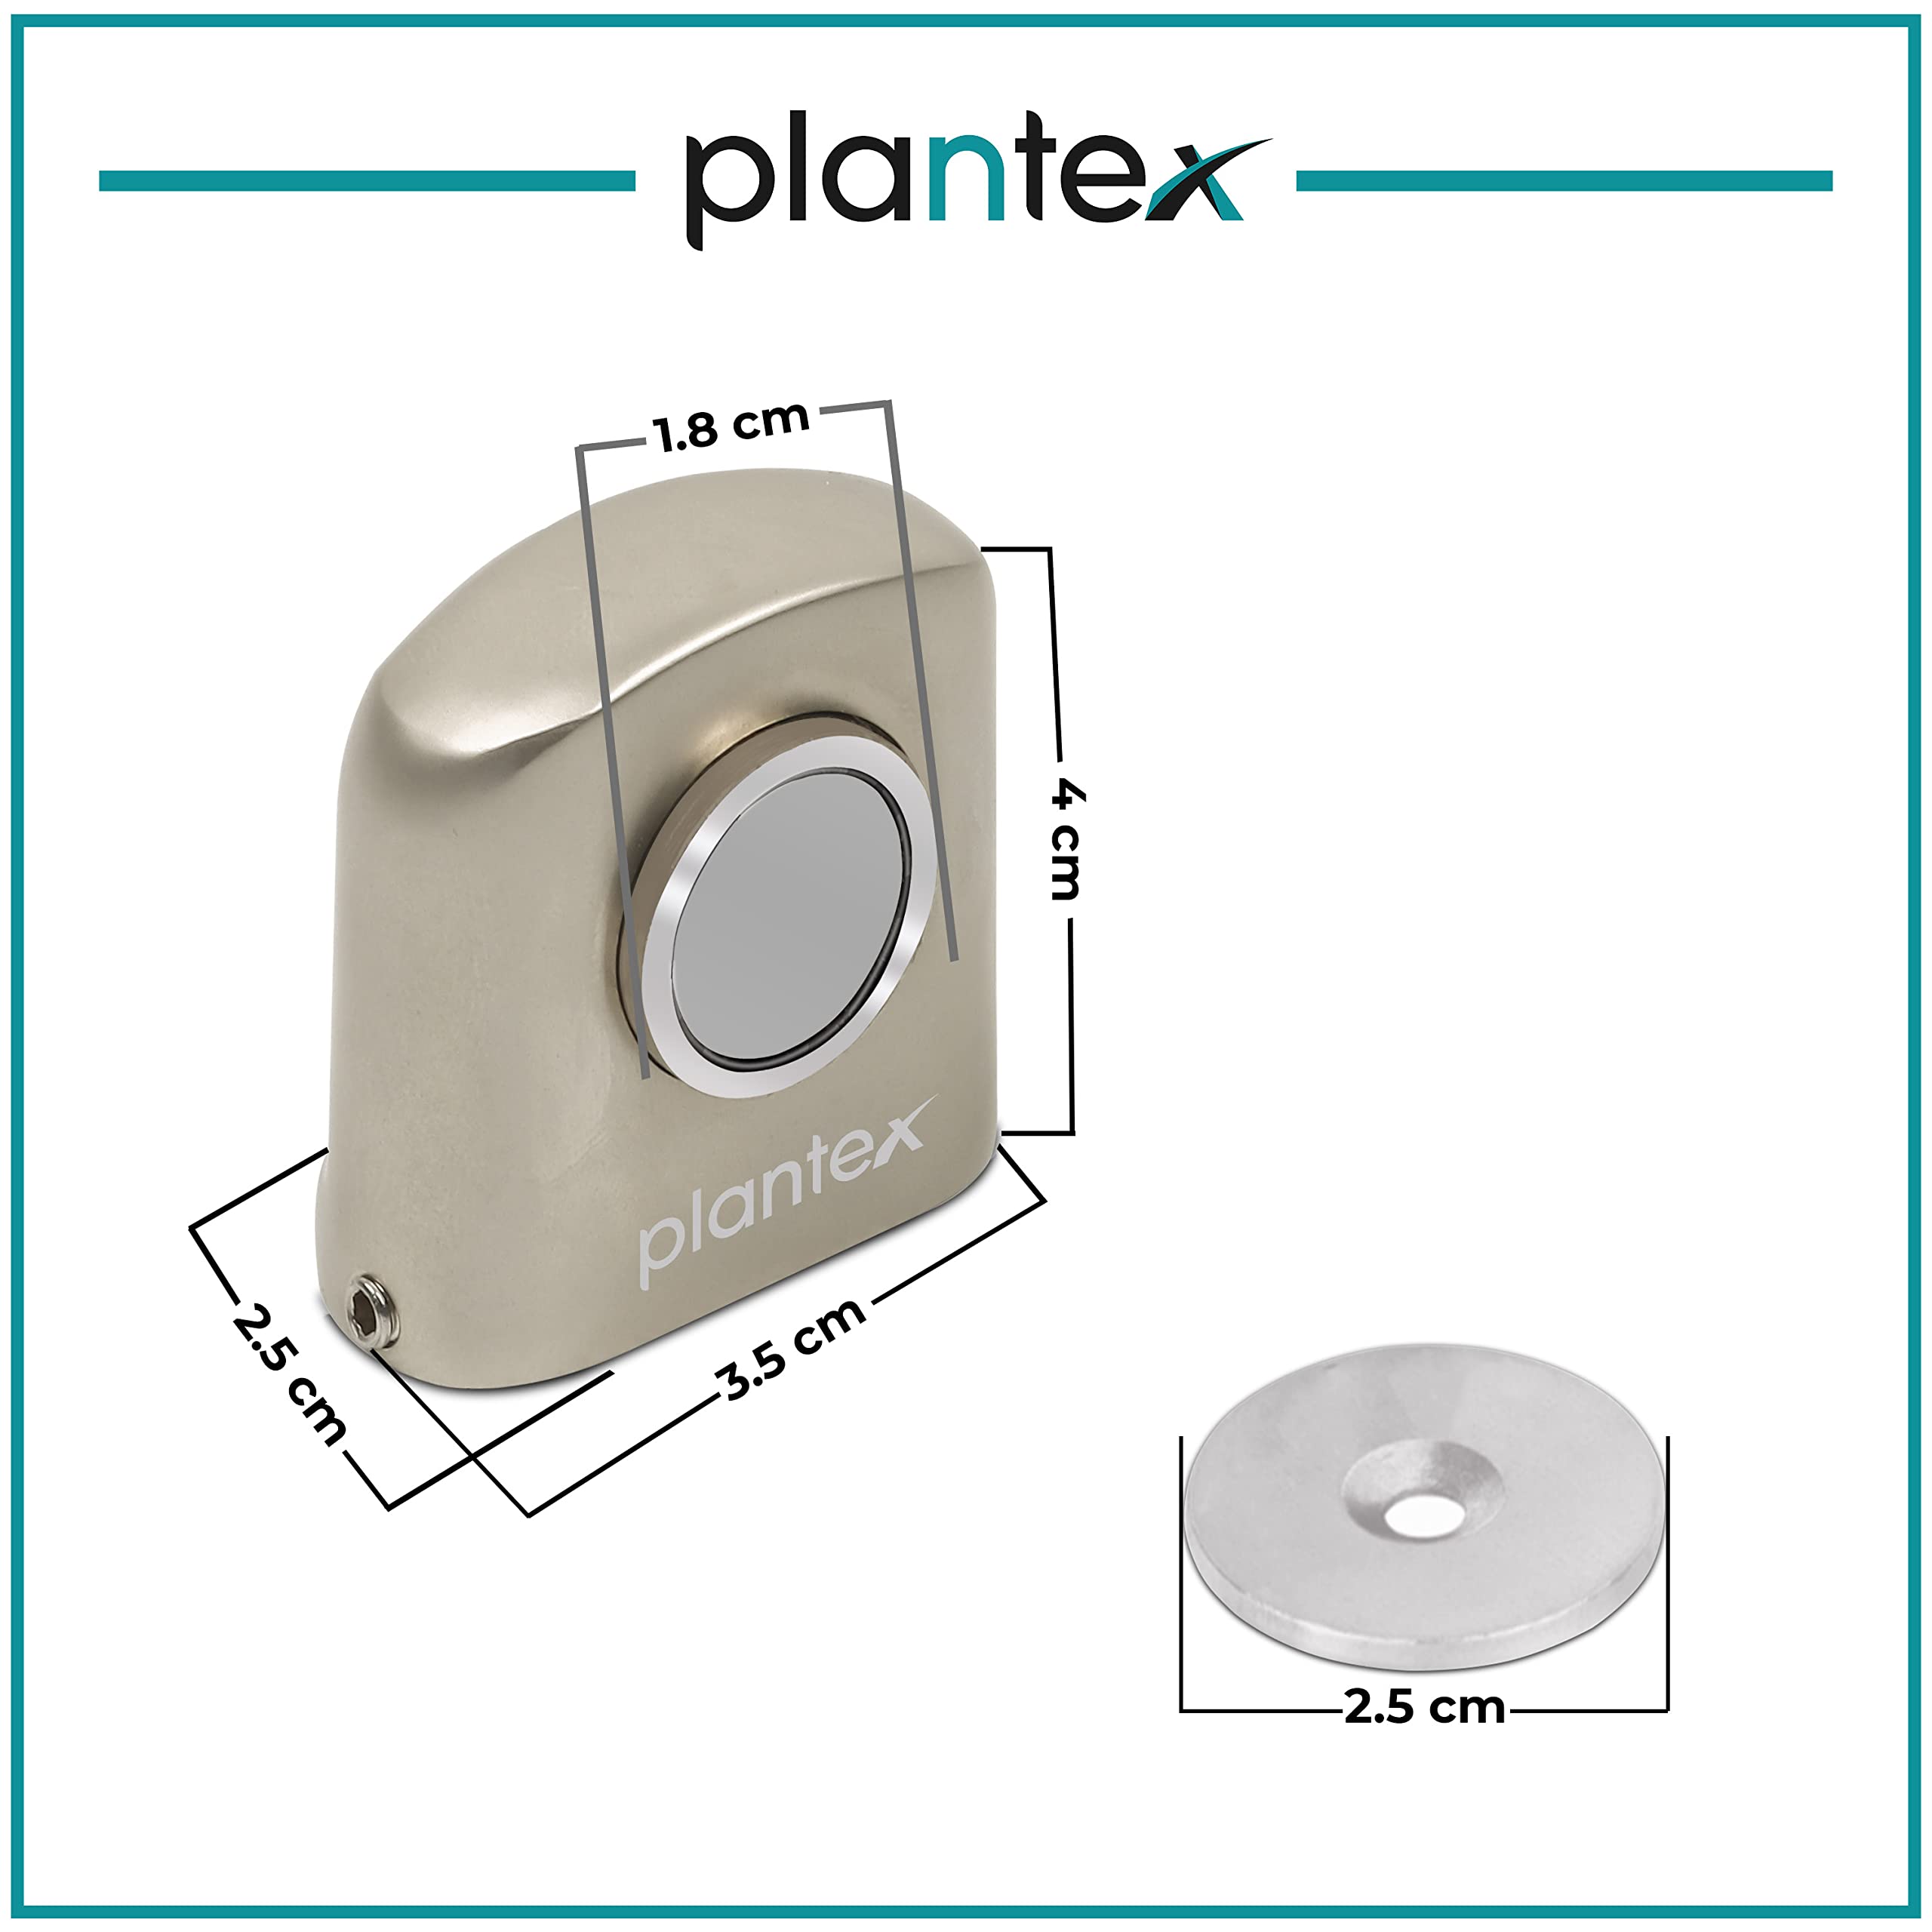 Plantex Heavy Duty Door Magnet Stopper/Door Catch Holder for Home/Office/Hotel, Floor Mounted Soft-Catcher to Hold Wooden/Glass/PVC Door - Pack of 2 (193 - Satin Matt)